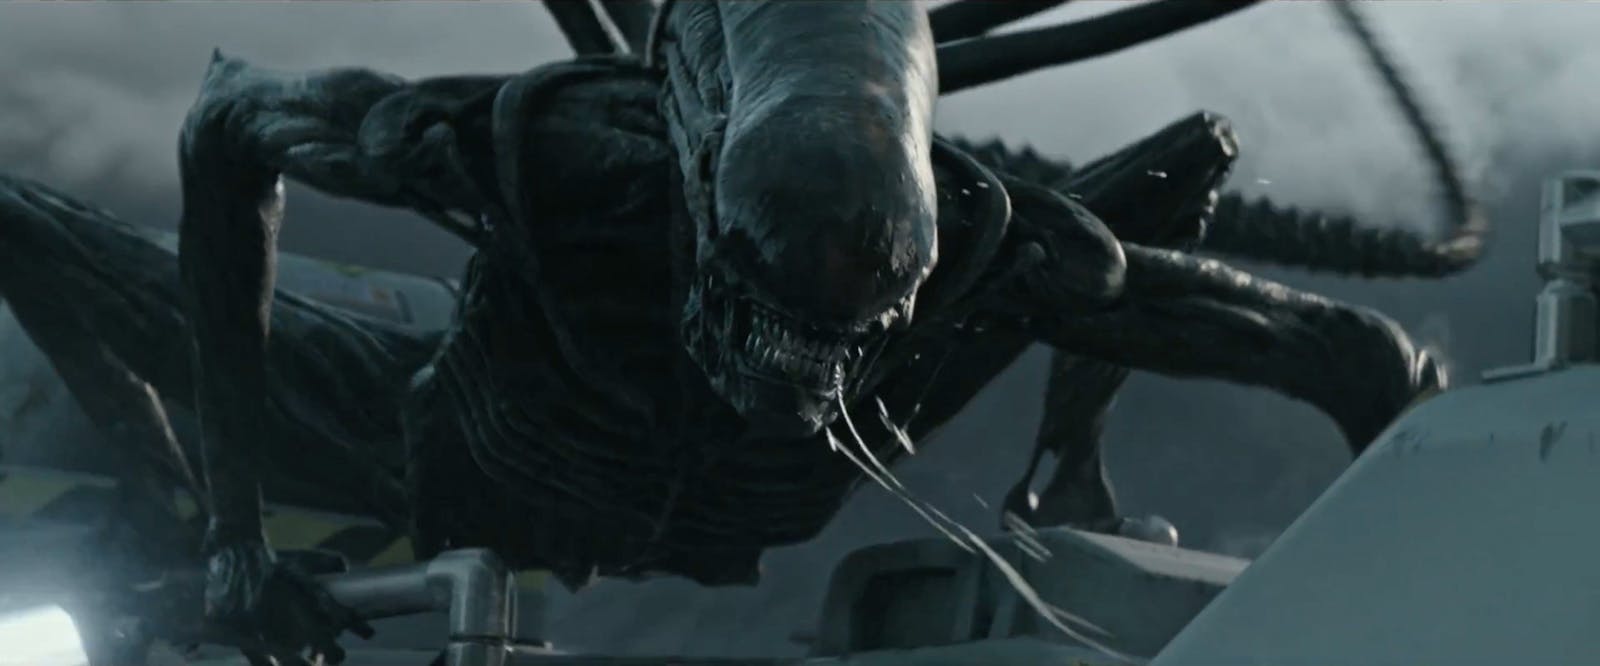 EXTRA: Han regisserar nya Alien